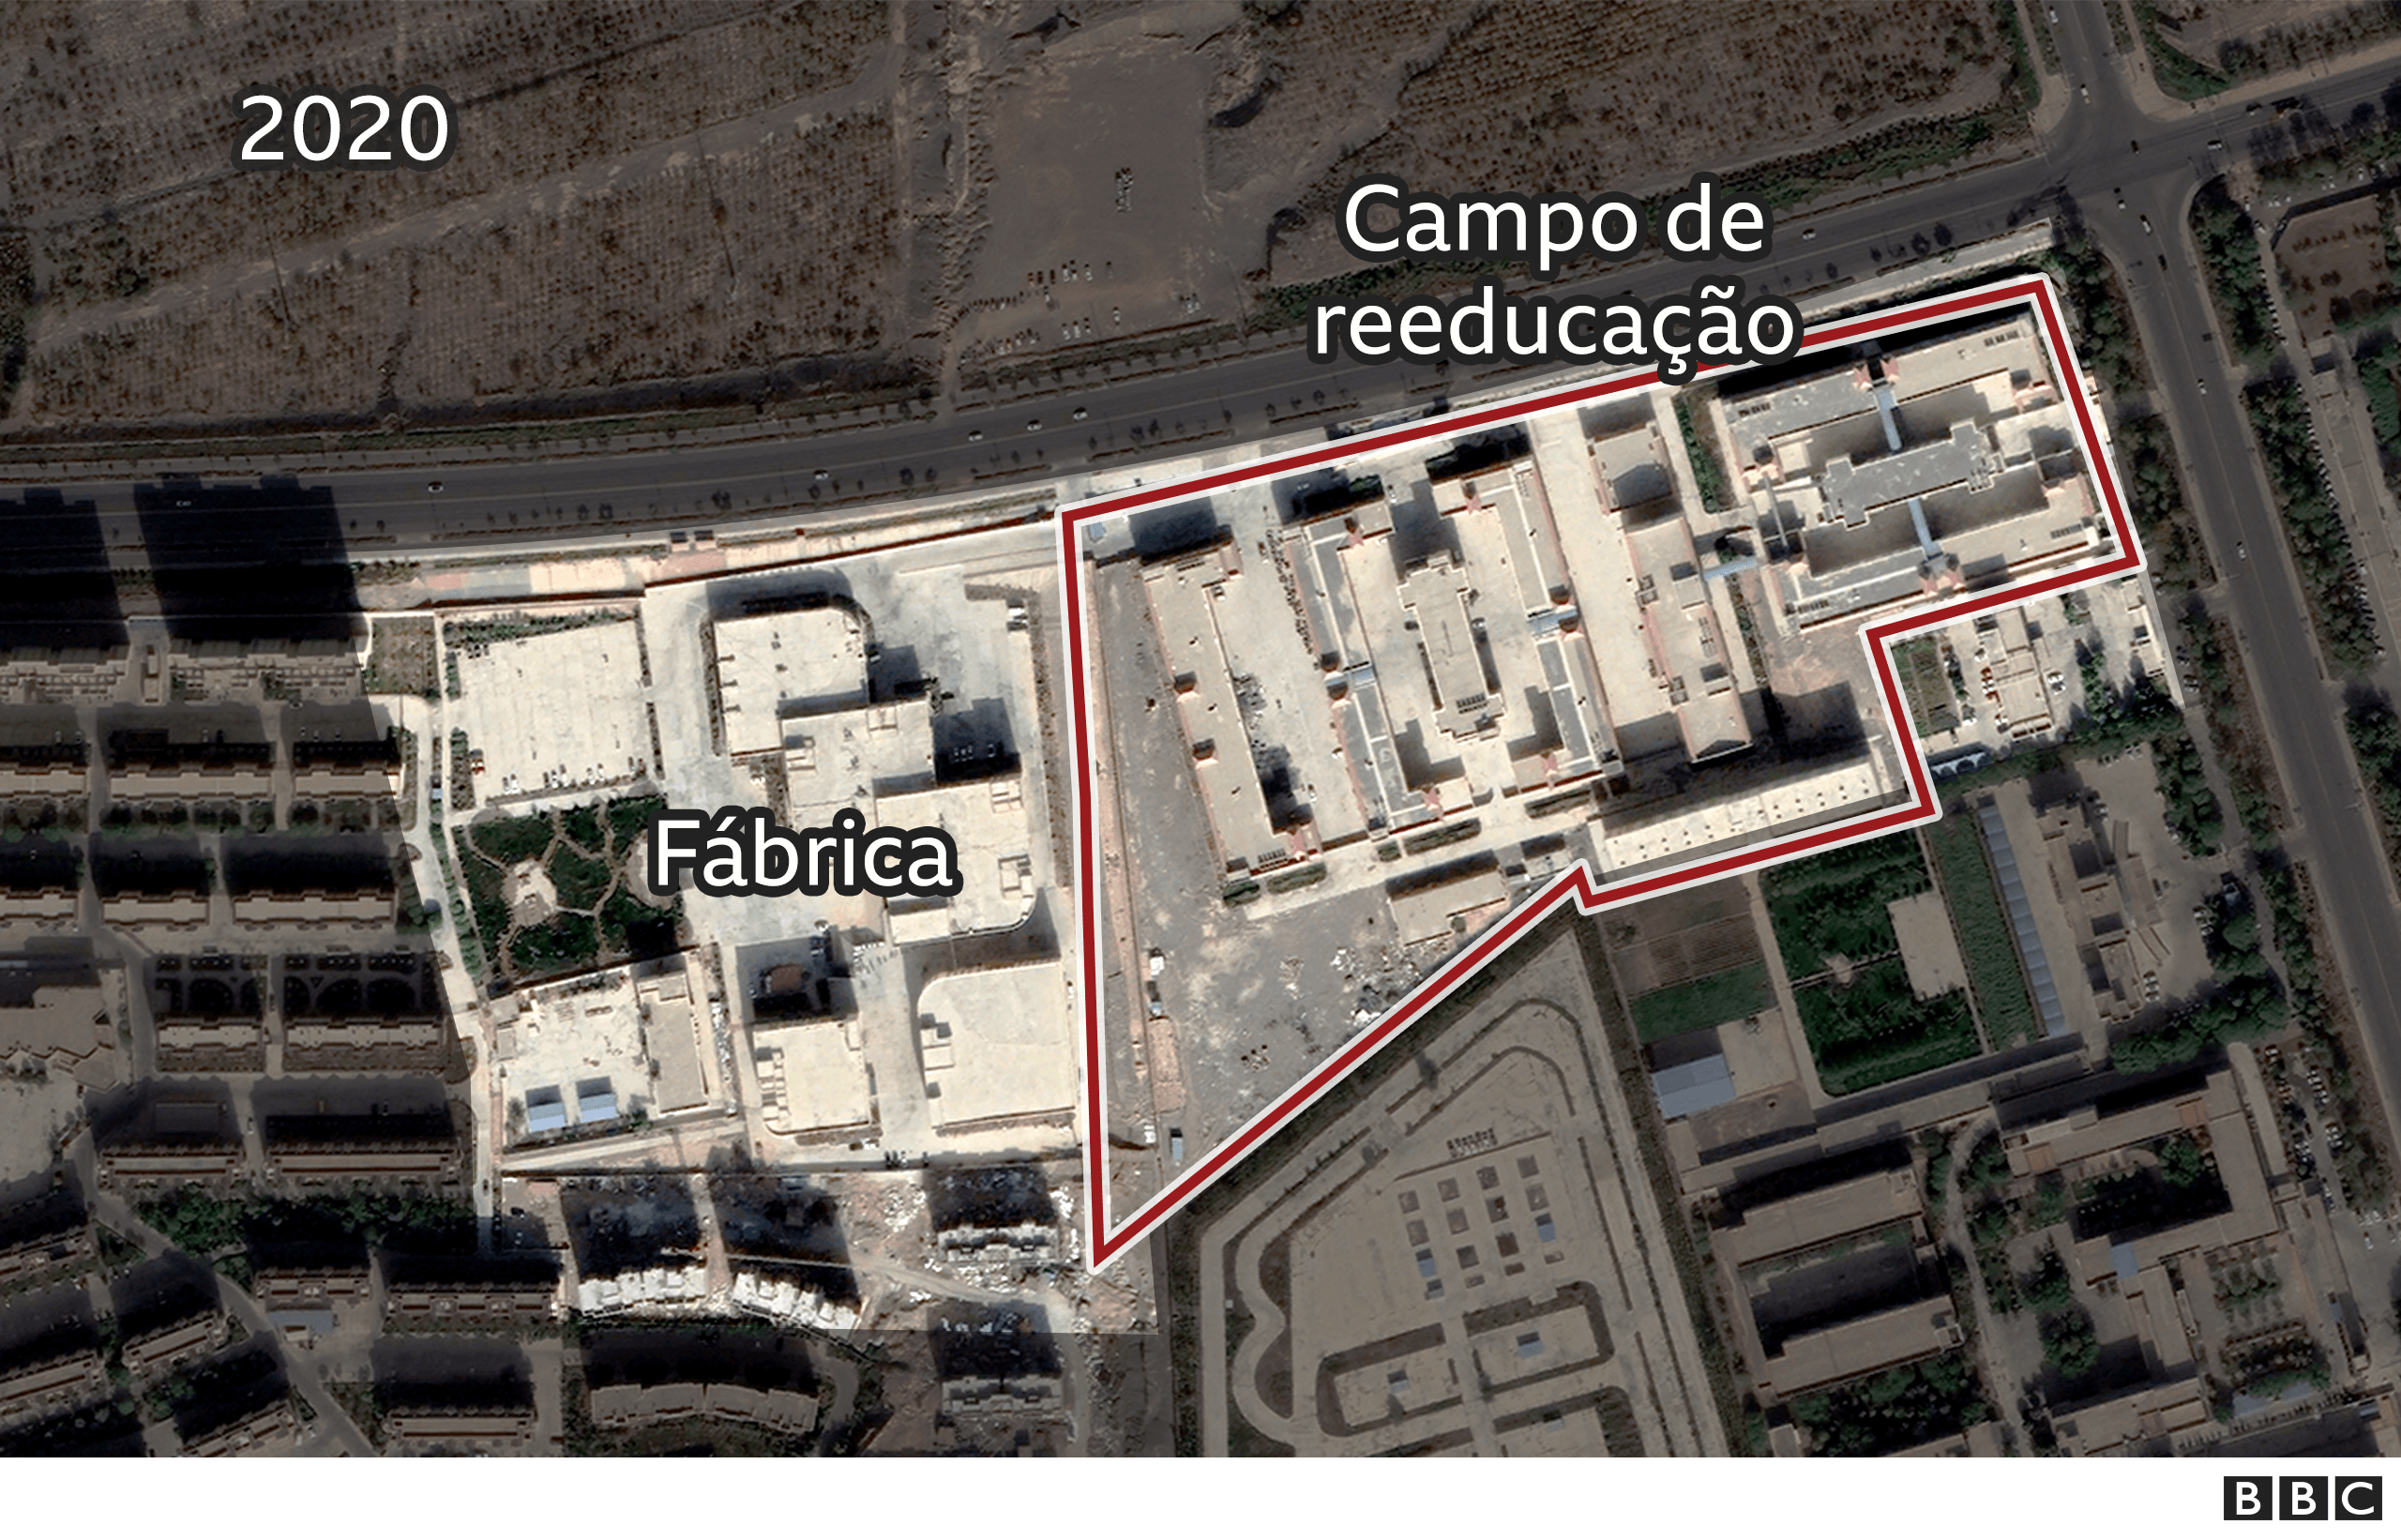 Imagem de satélite mostra fábrica ao lado de complexo prisional